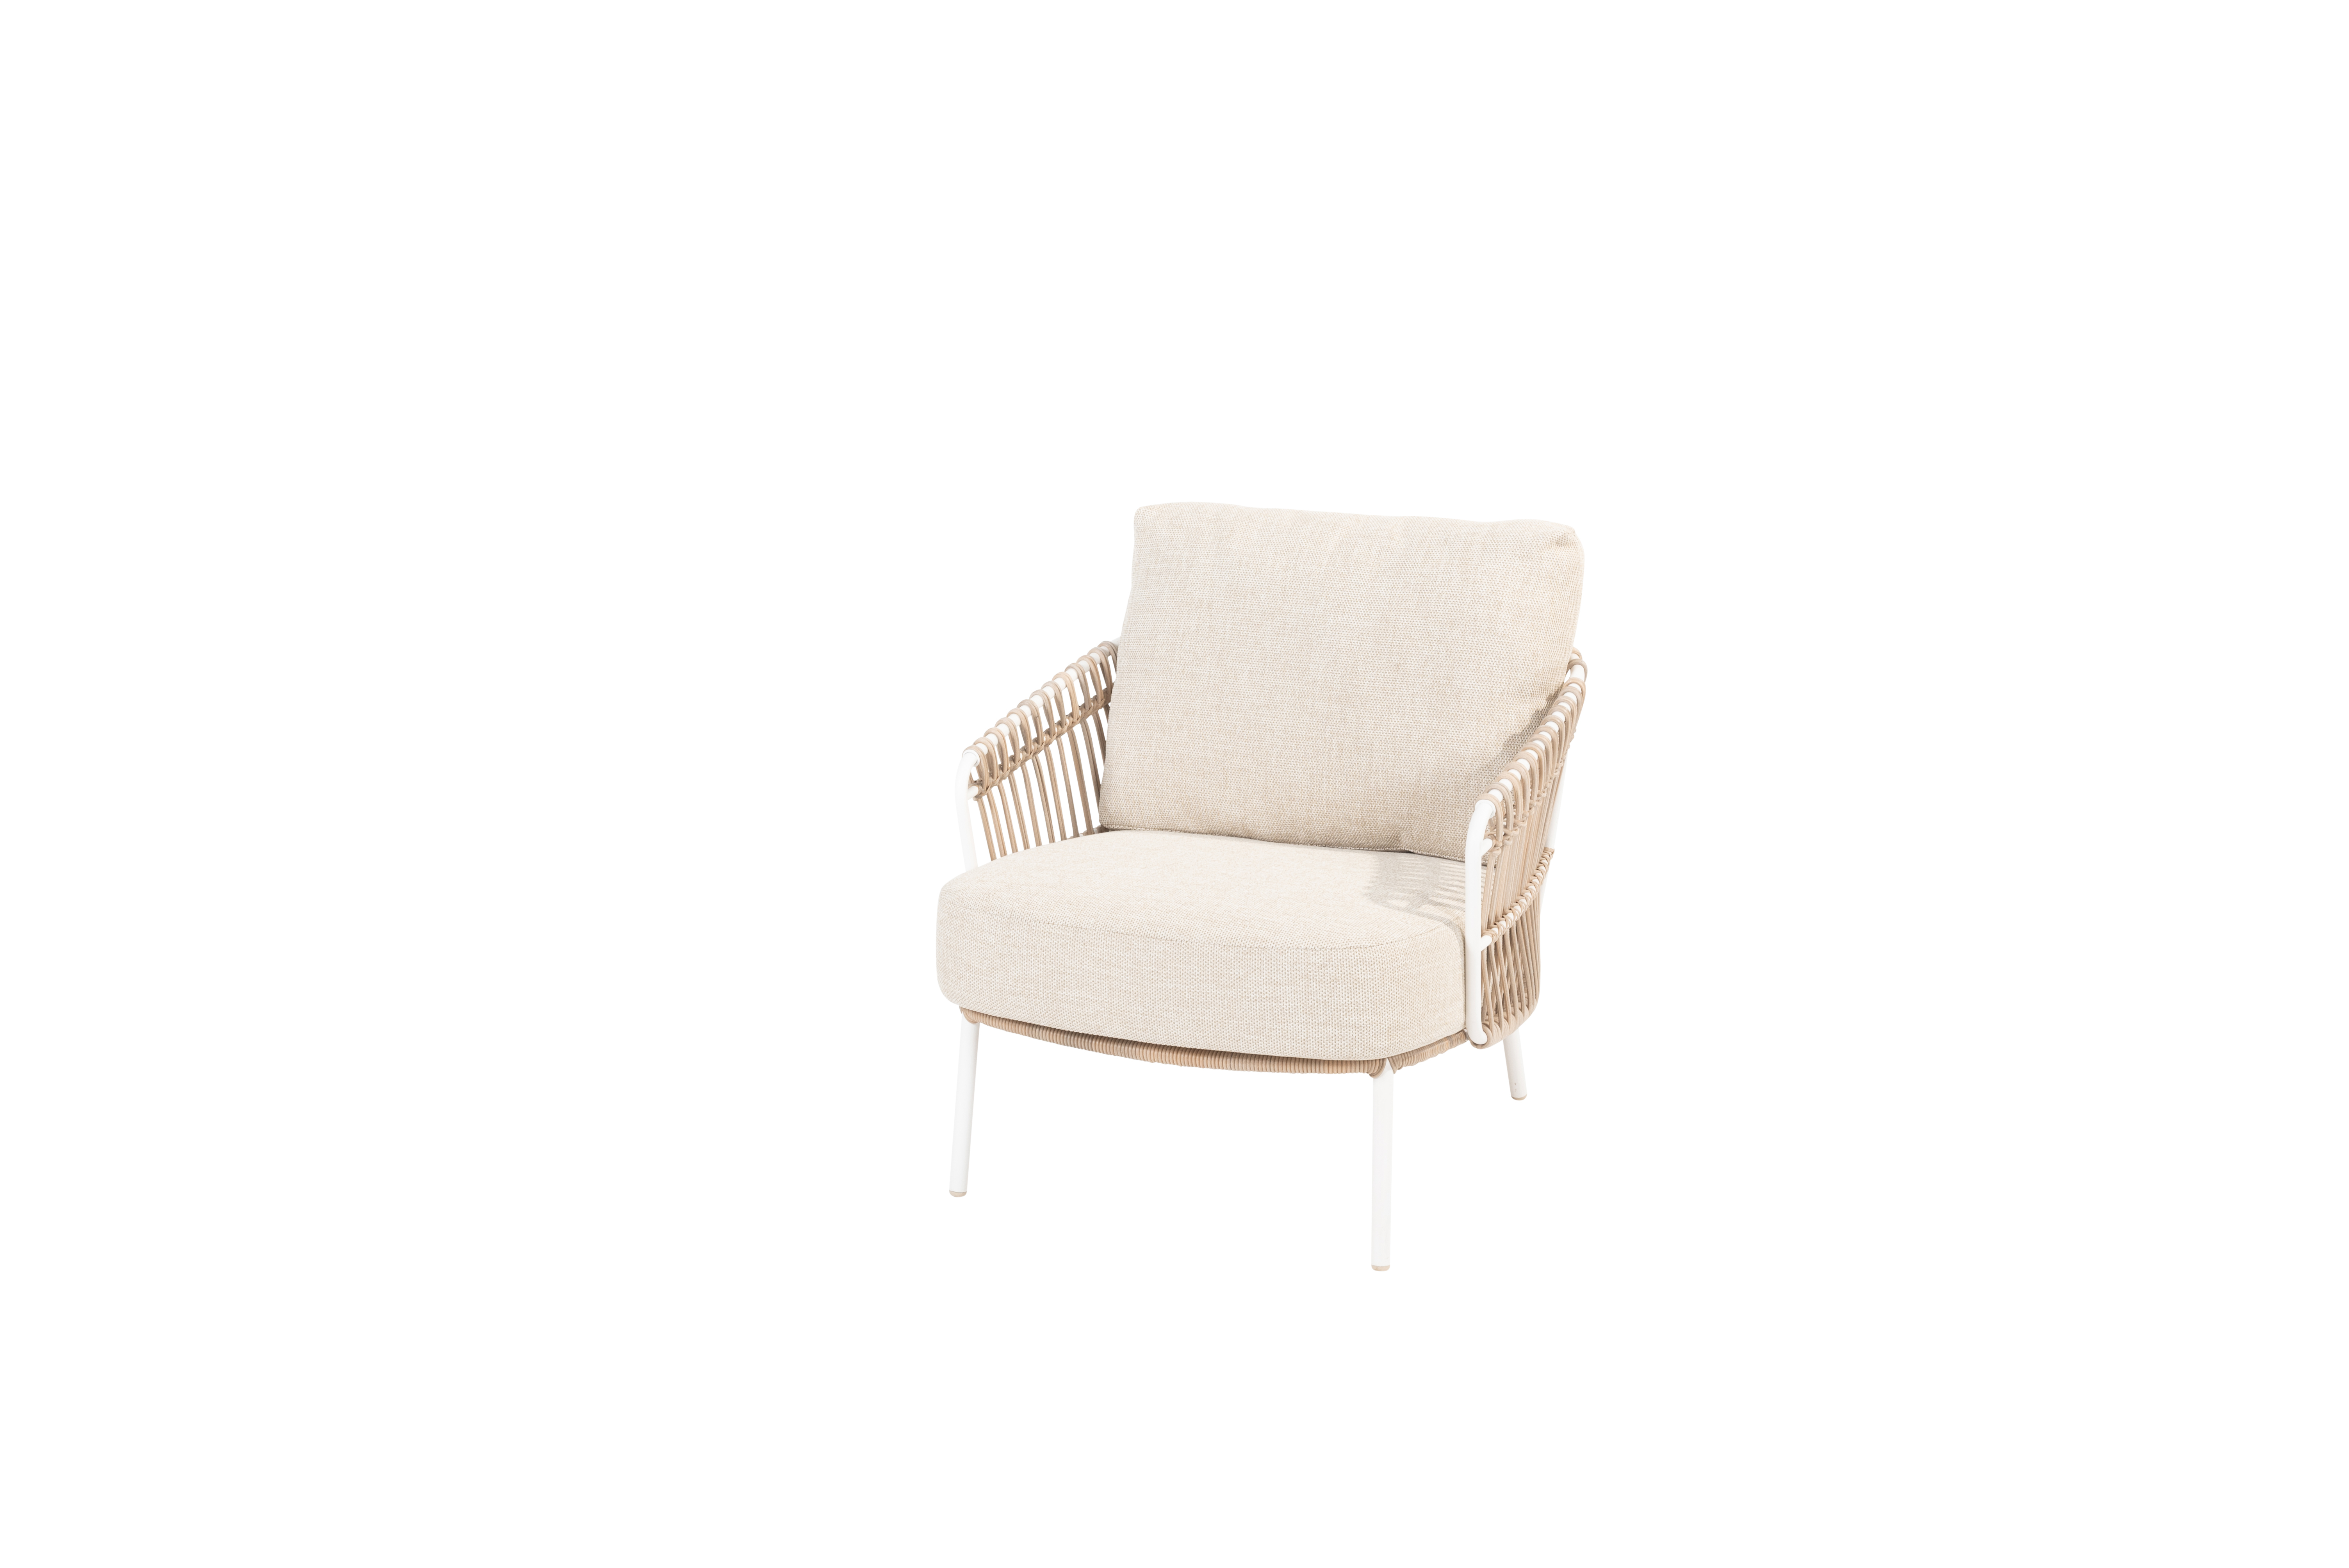 Dalias living chair white with 2 cushions 